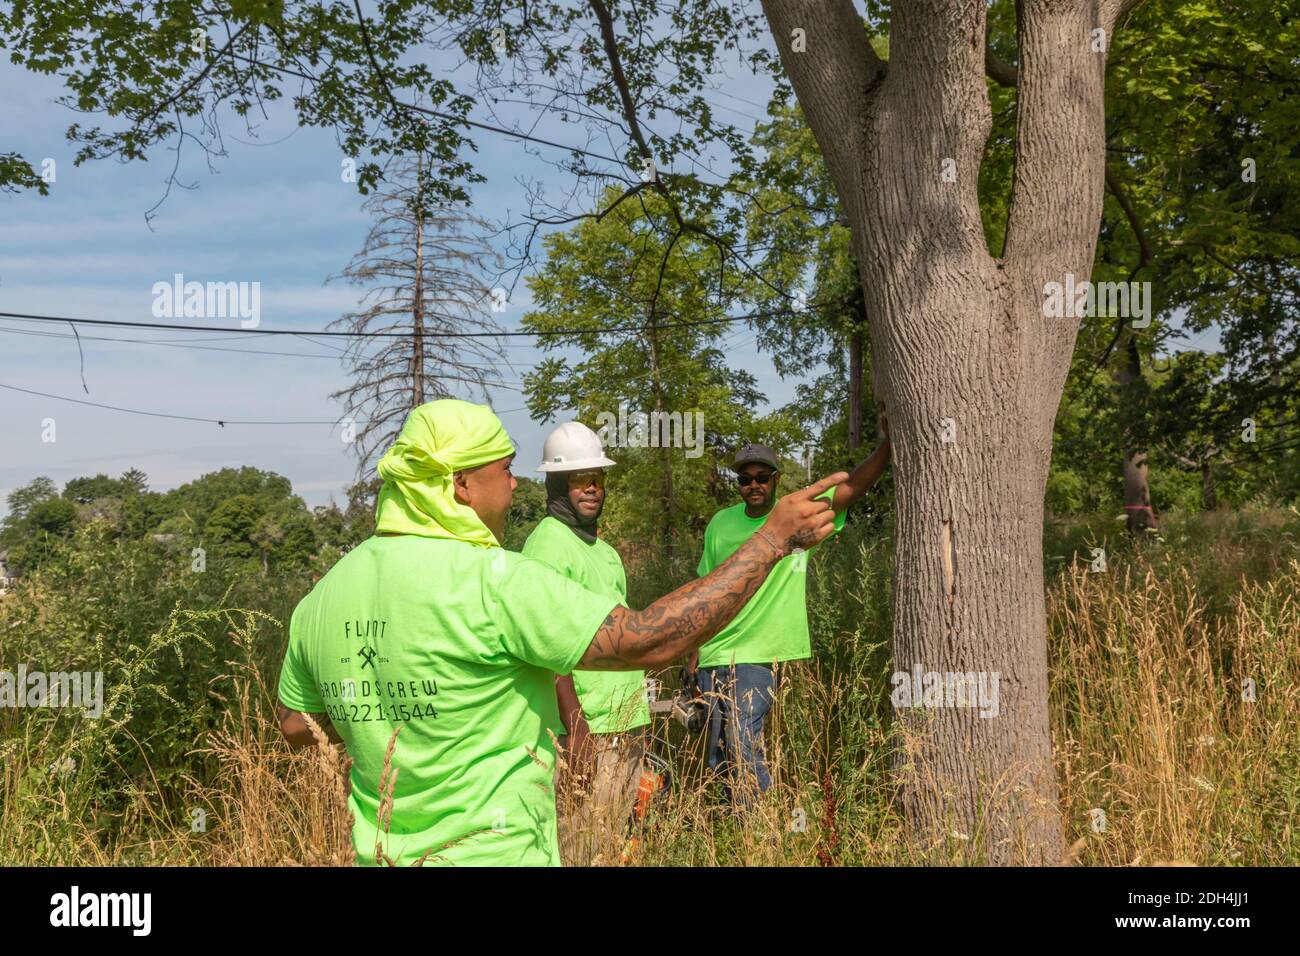 Flint, Michigan - i lavoratori del Michigan Grounds Crew partecipano a una comunità di pulizia dei lotti vacanti. Foto Stock